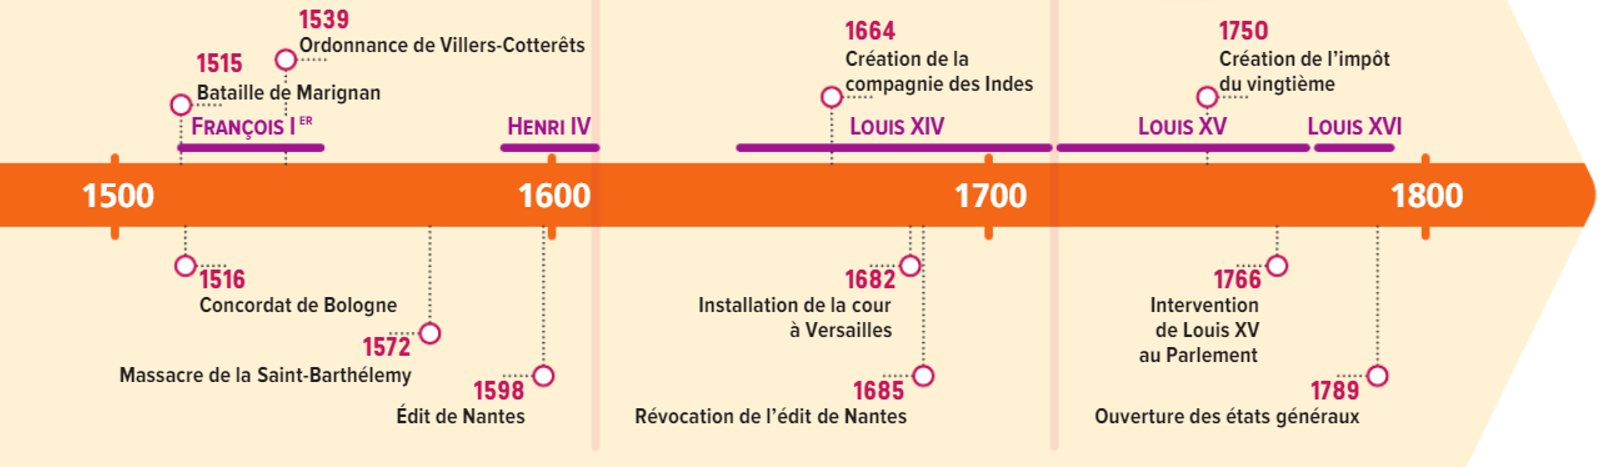 La construction de l'État monarchique en France de 1380 à 1715